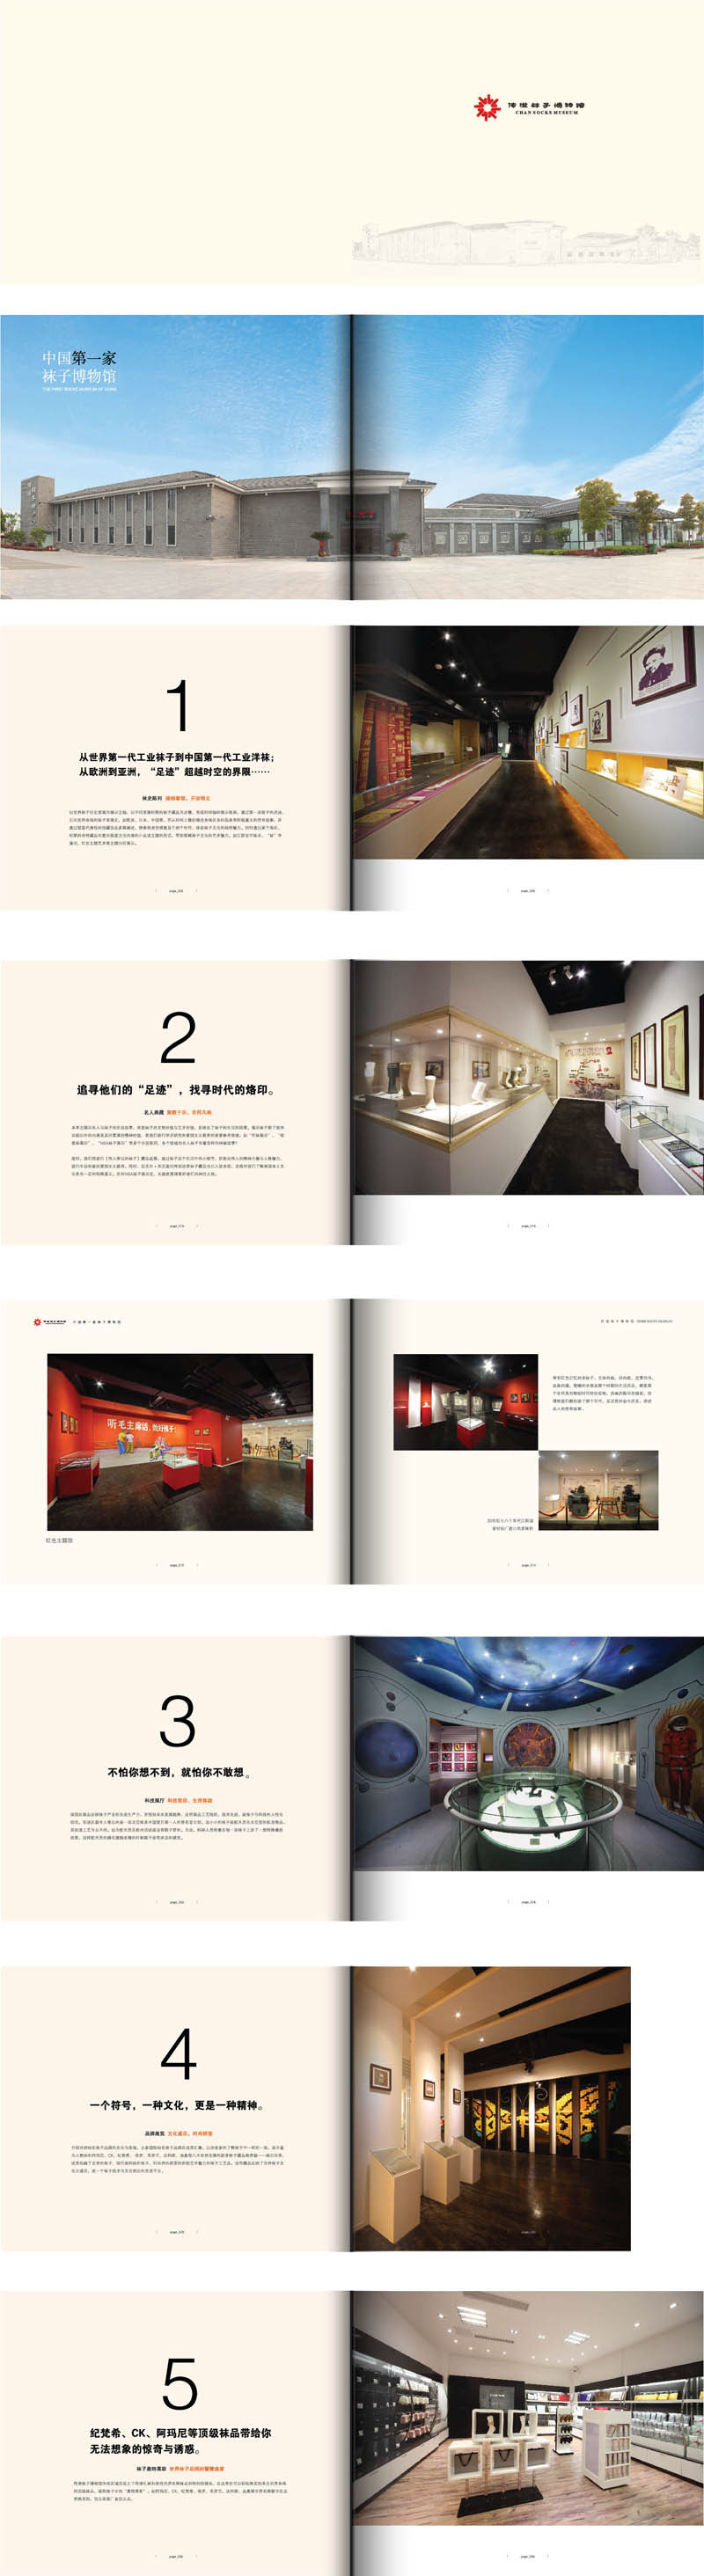 中国第一家袜子博物馆 品牌形象设计 布馆 文案文物编辑